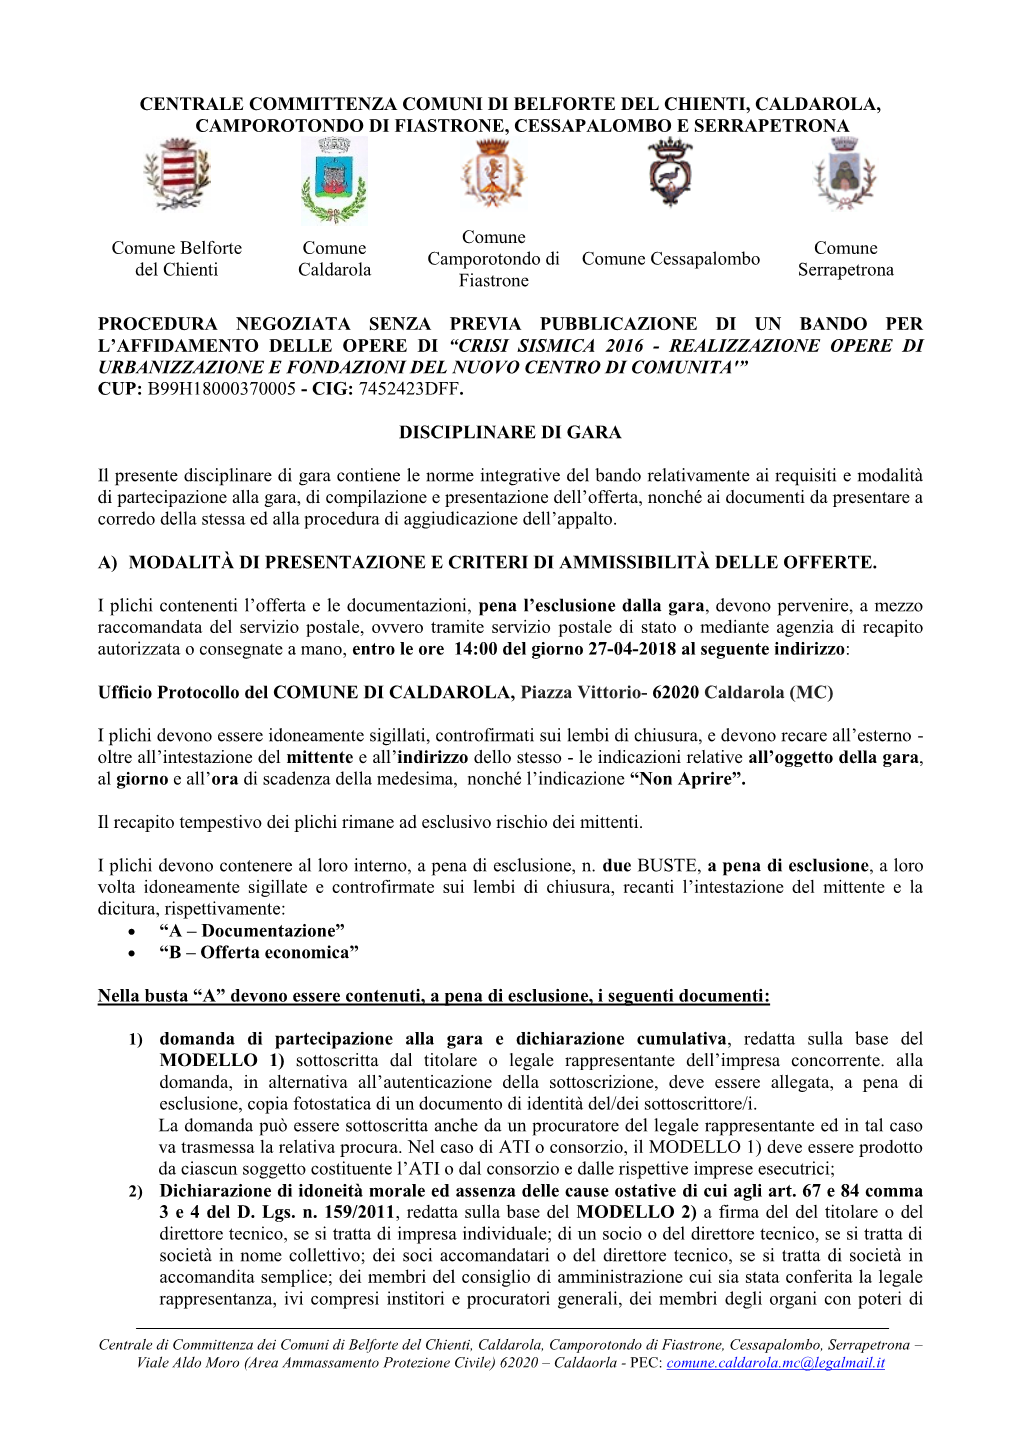 Centrale Committenza Comuni Di Belforte Del Chienti, Caldarola, Camporotondo Di Fiastrone, Cessapalombo E Serrapetrona